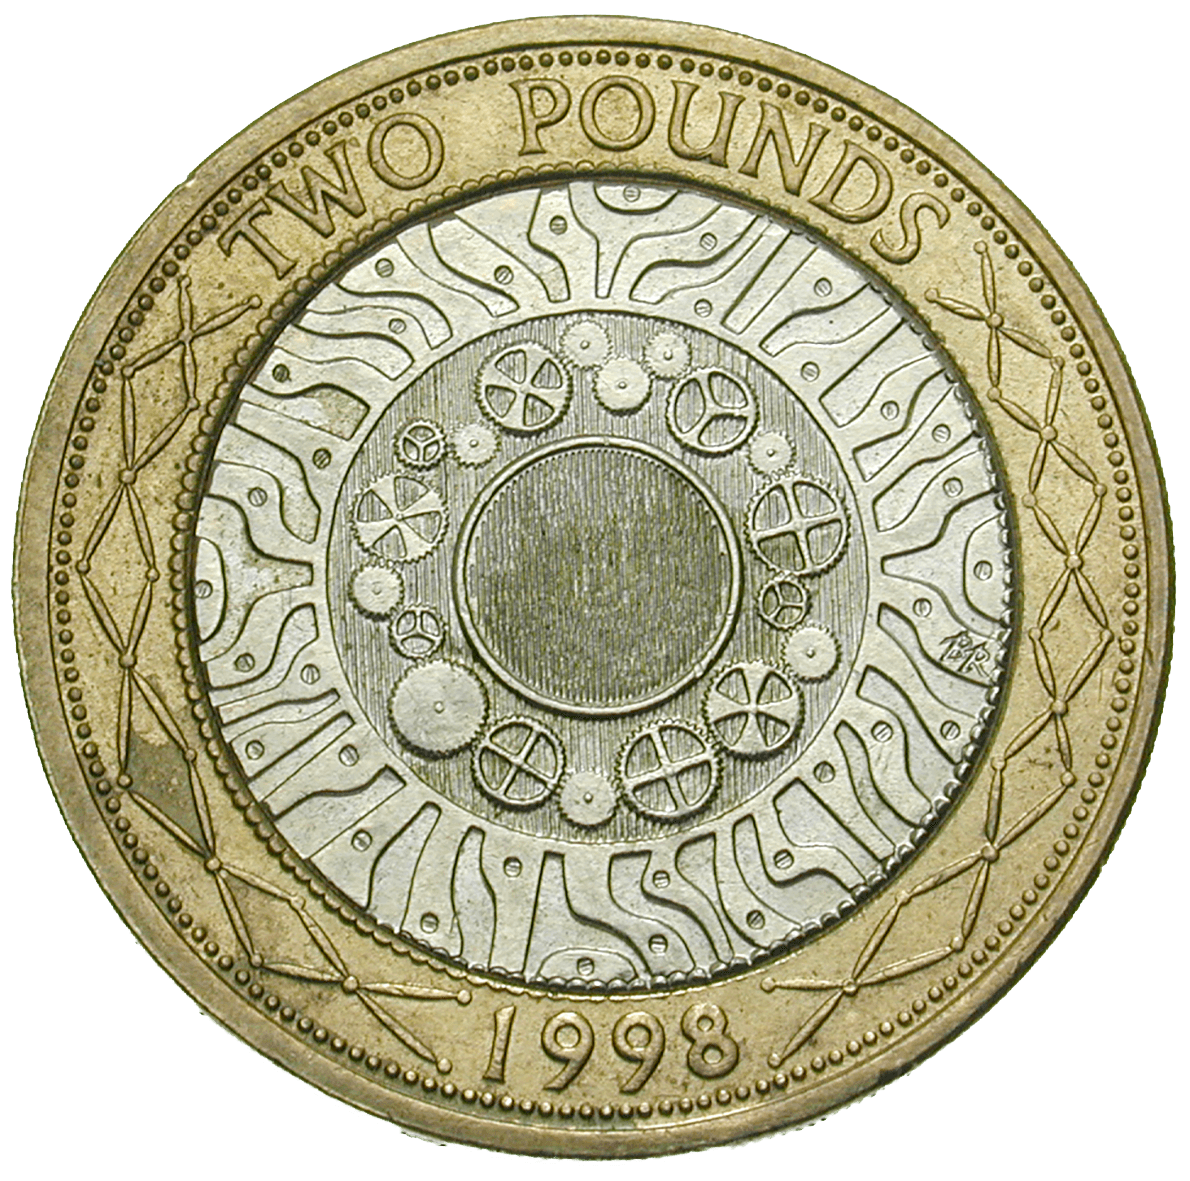 Vereinigtes Königreich Grossbritannien, Elisabeth II., 2 Pfund 1998 (reverse)